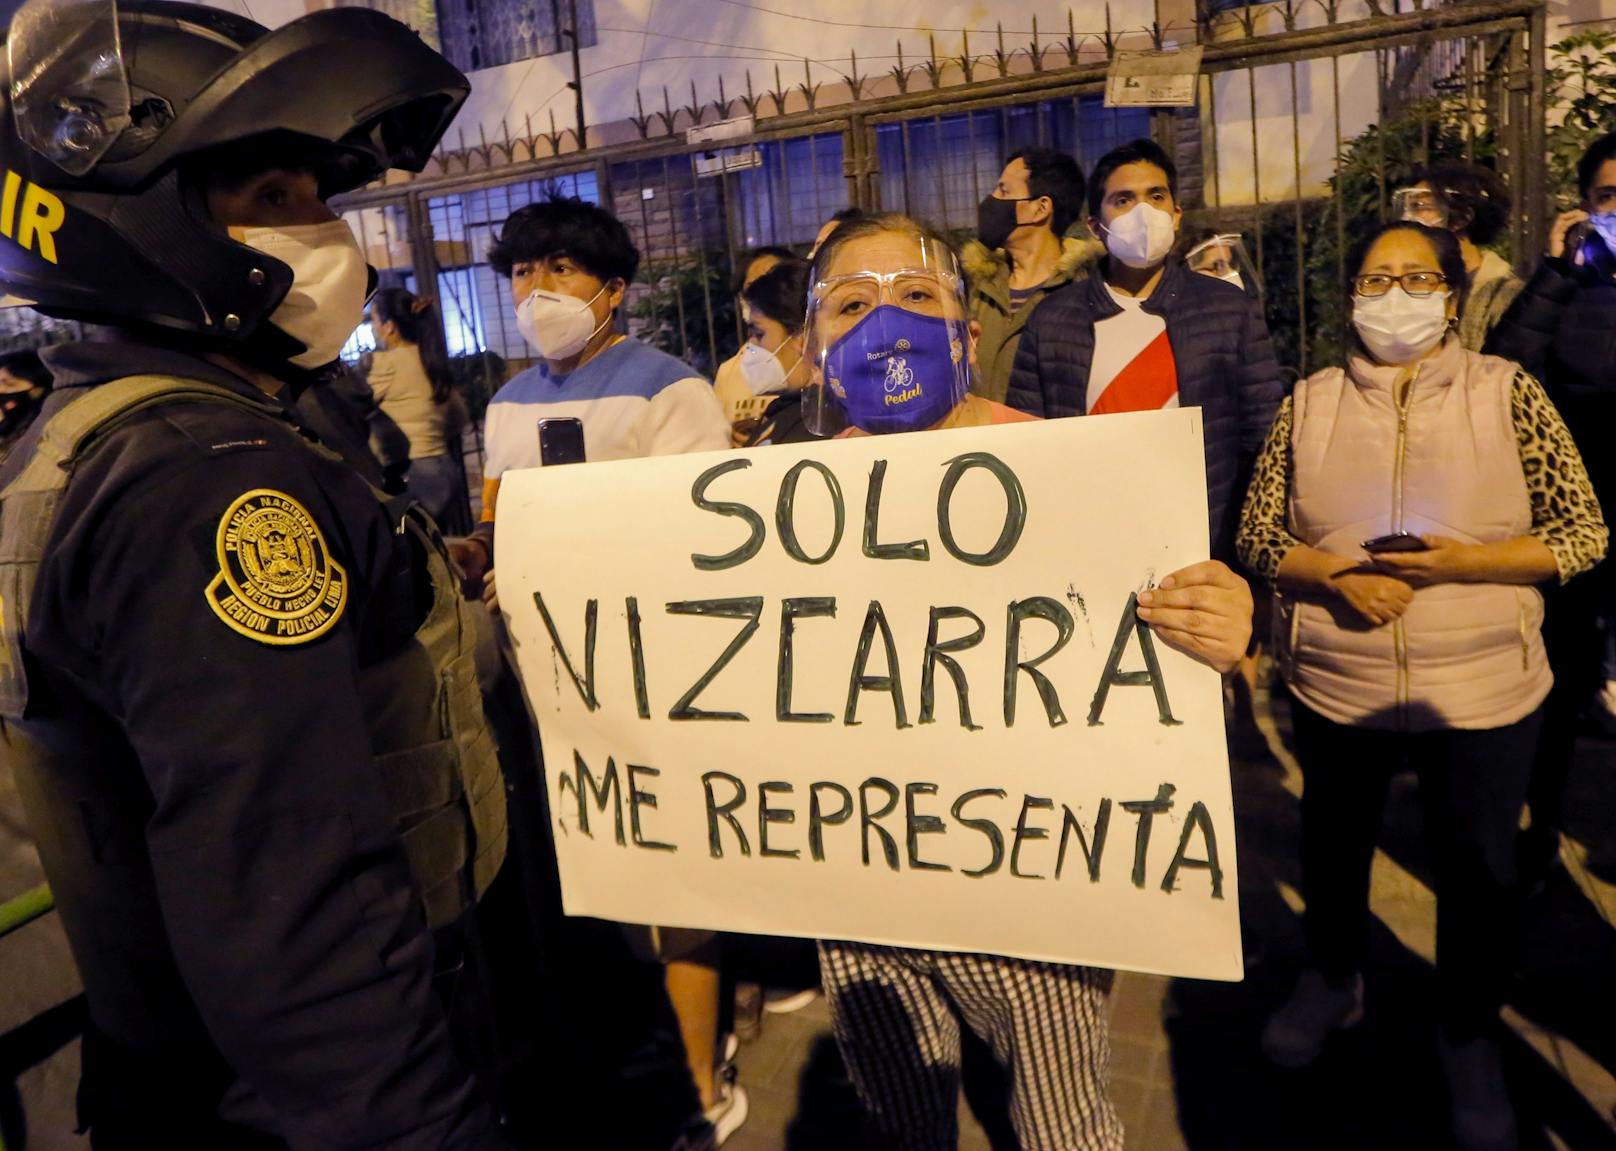 Vizcarra ist in der Bevölkerung äußerst populär. Hier hält eine Frau einen Banner mit "Nur Vizcarra vertritt mich" in die Höhe nachdem jener abgesetzt wurde.